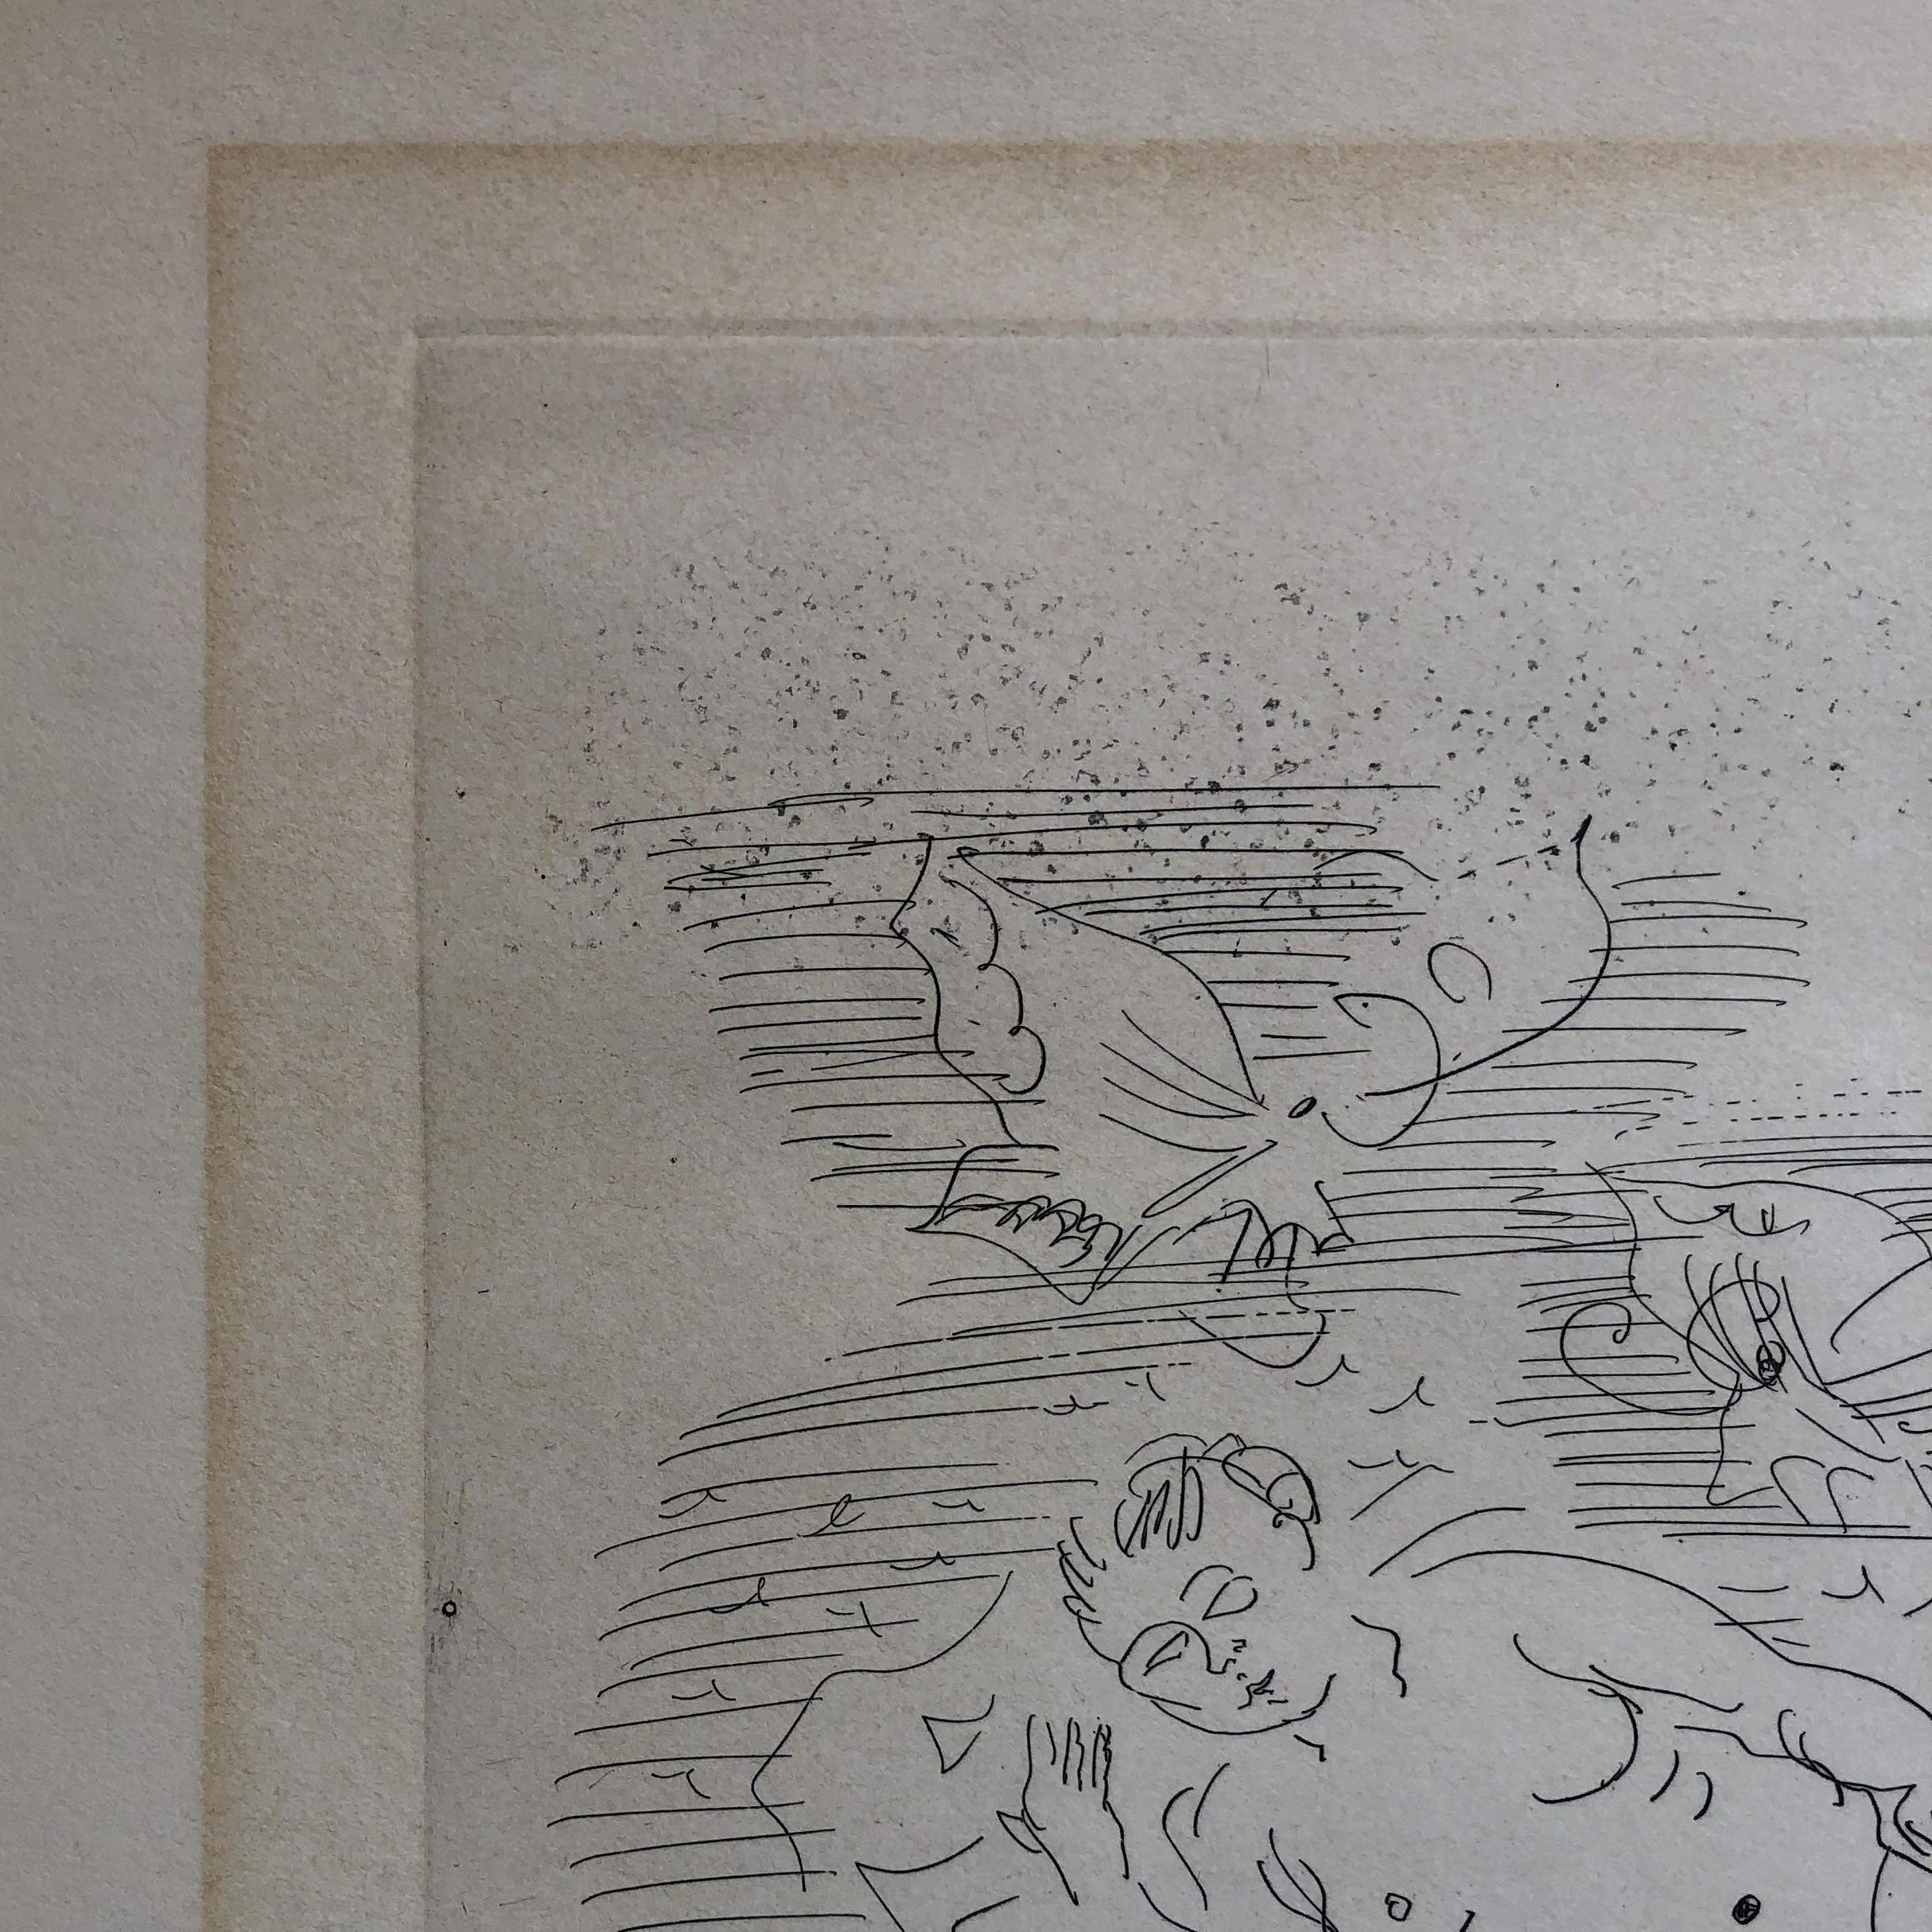 Raoul DUFY
Badende am Strand

Original-Radierung, um 1930
In der Platte signiert 
Auflage von 60 Exemplaren
Auf Rives-Pergament, Format 33 x 50 cm (ca. 13 x 19,7 in)
Guter Zustand, Spuren von Rahmung
